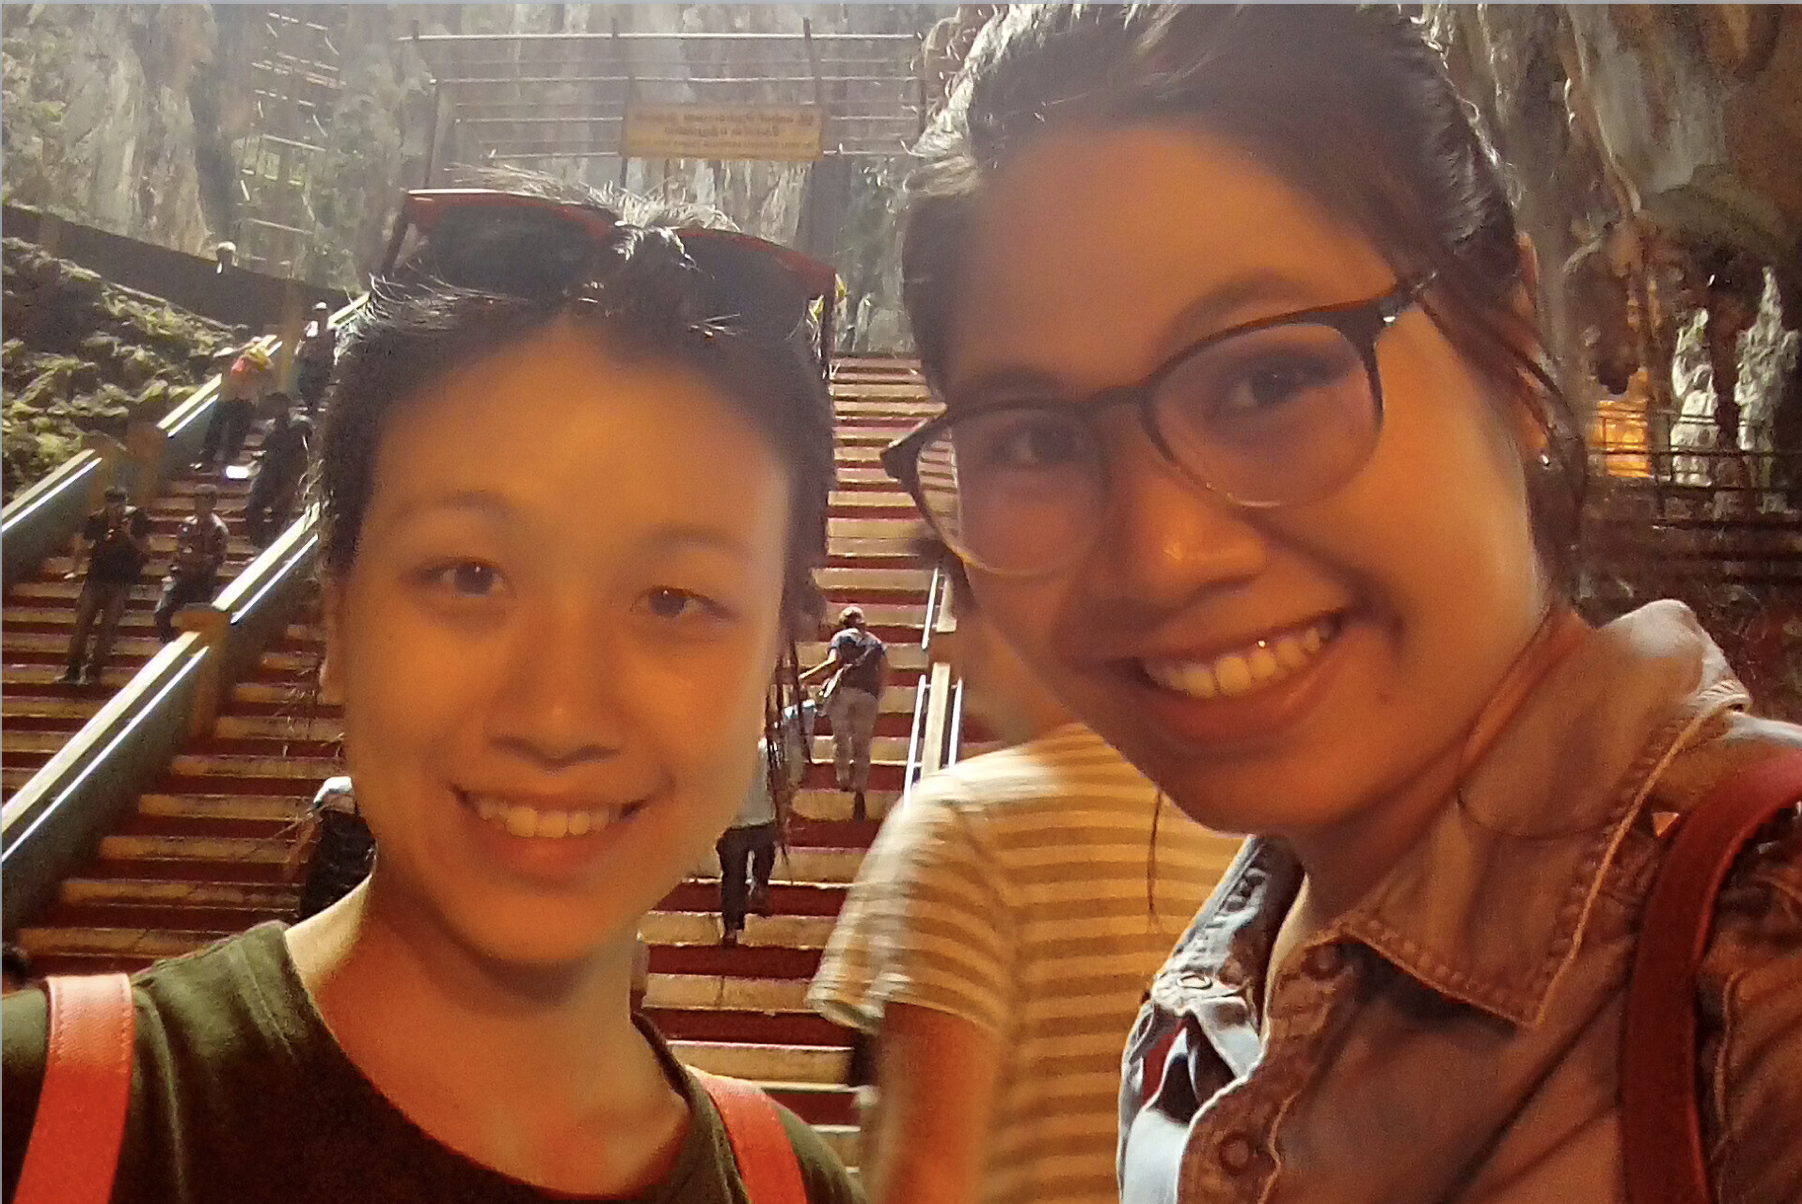 รีวิวน้องออน+น้องเฟิร์น ไปเรียนภาษาอังกฤษฟรี 8 เดือน+ปริญญาโทที่สถาบัน Westminster International College KL, Malaysia